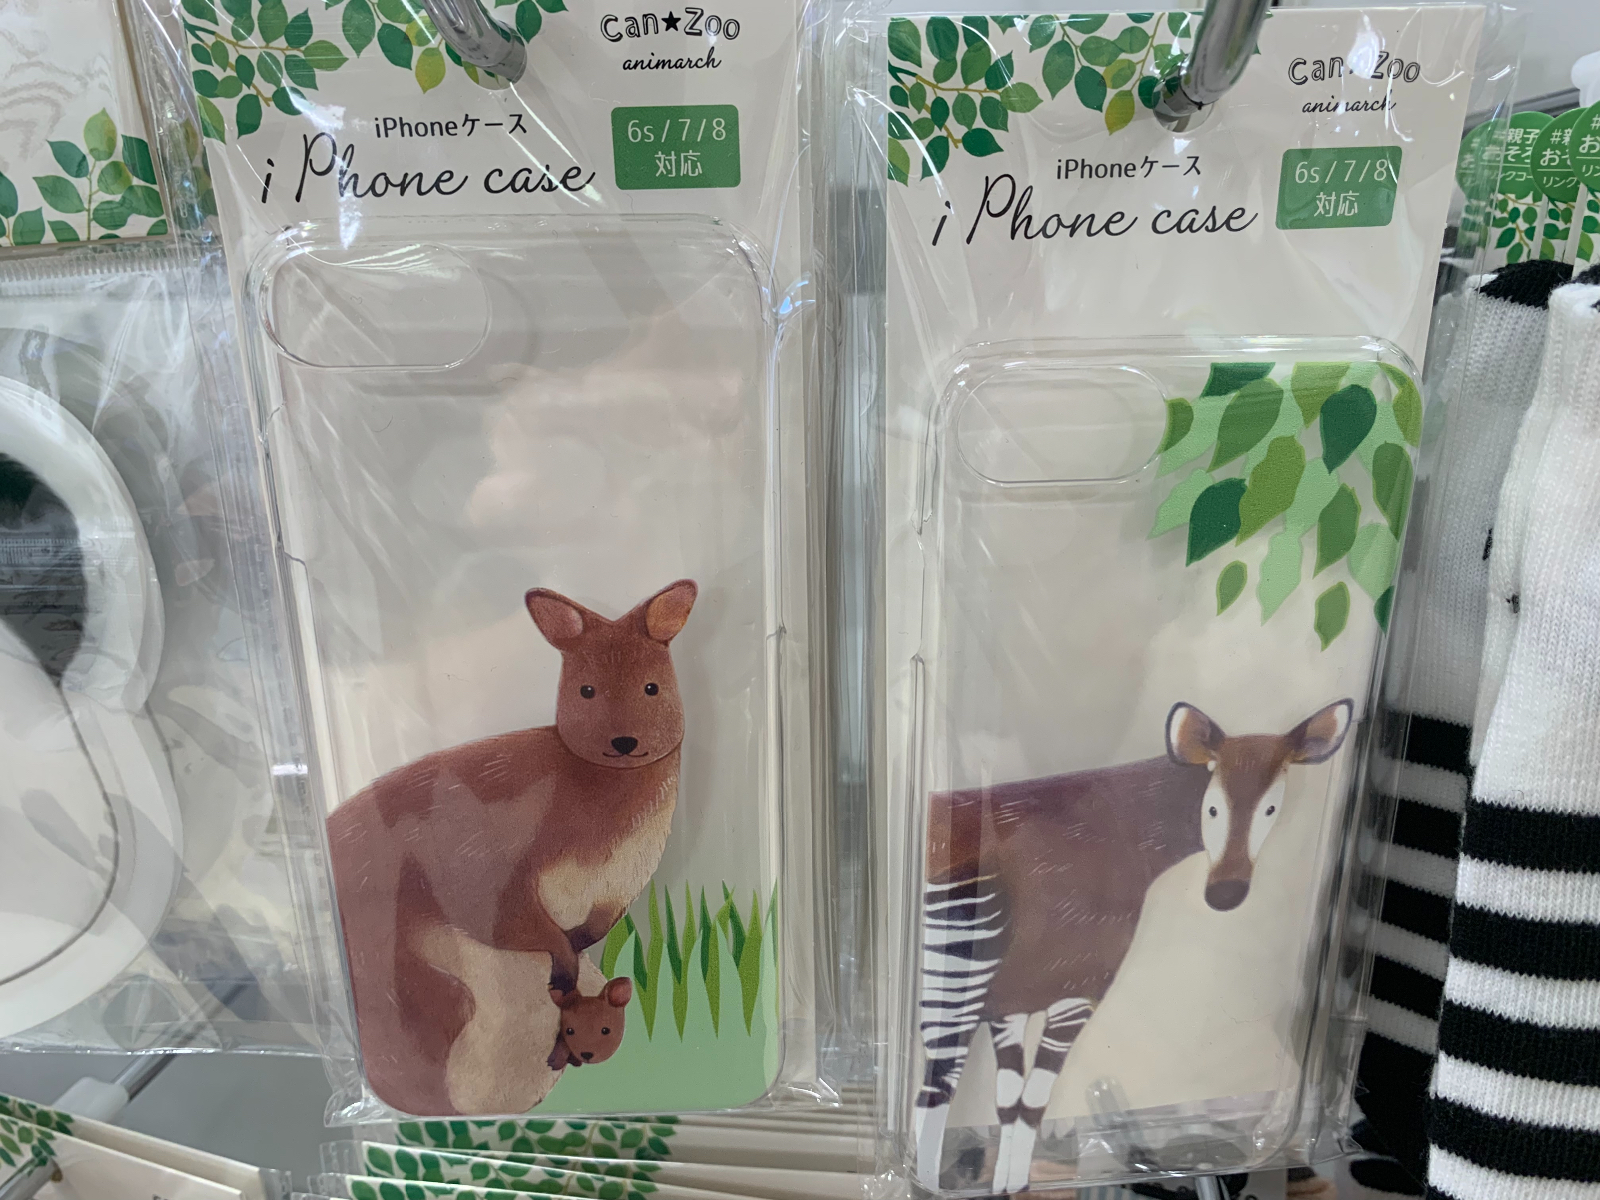 キャンドゥ Can Zooシリーズ「iPhoneケース」